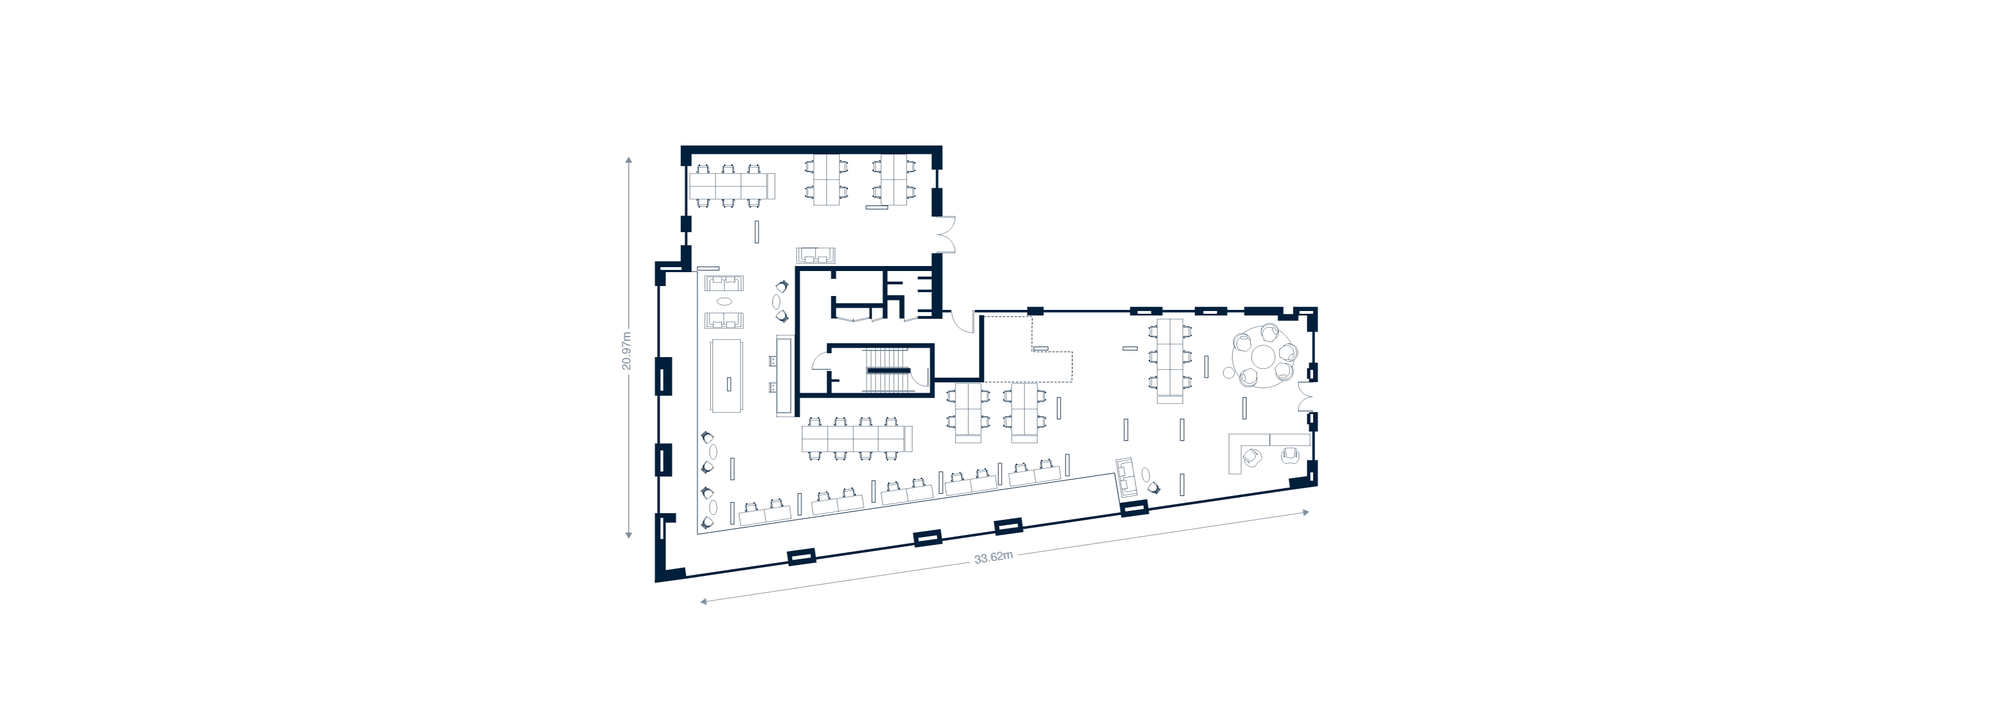 esq-block-e-ground-floor-stage-5-furnished-desktop-32758.png